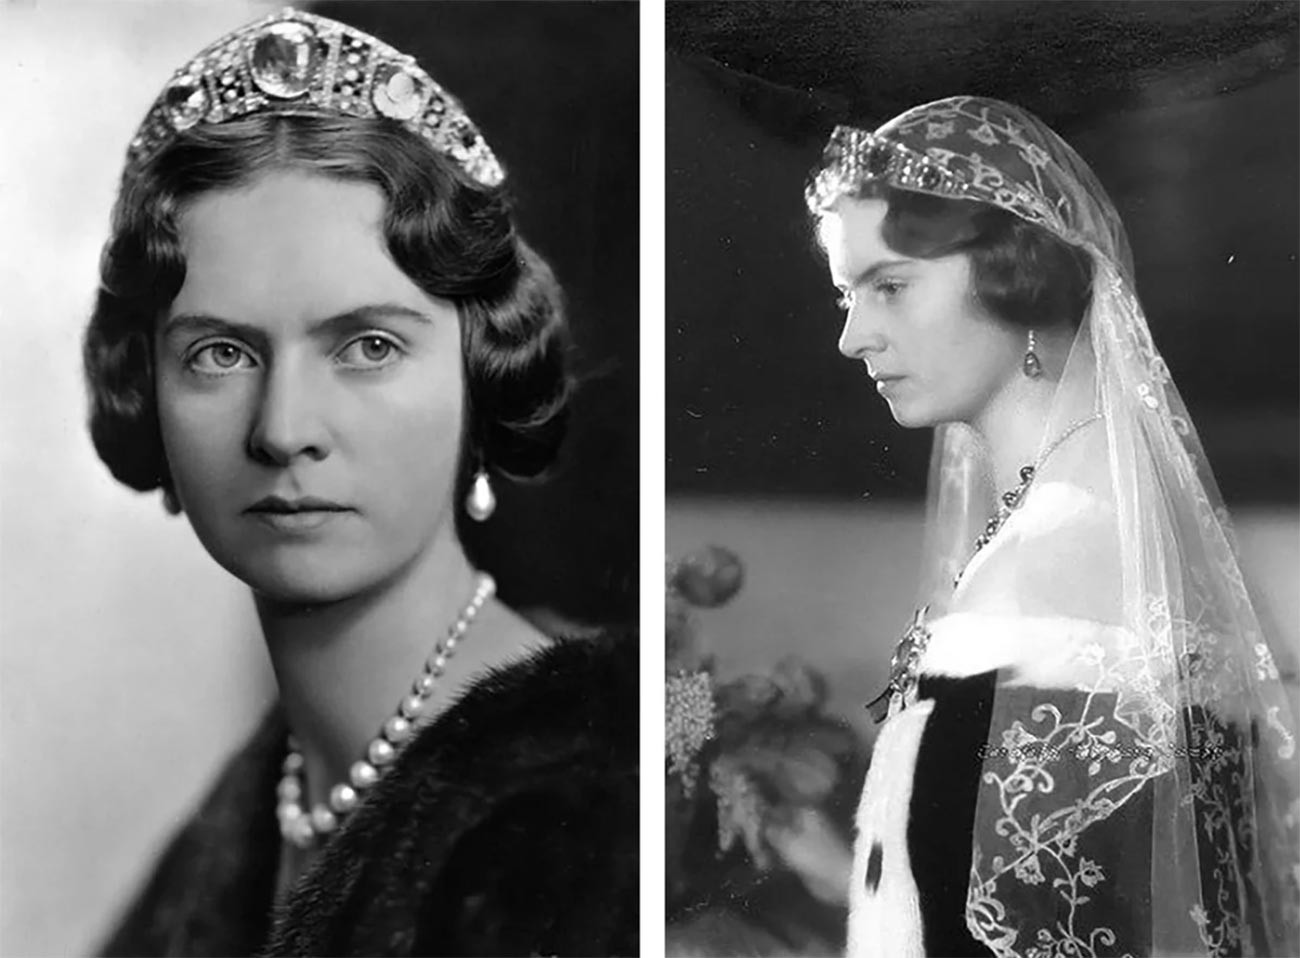 Princess Sibylla of Saxe-Coburg and Gotha.